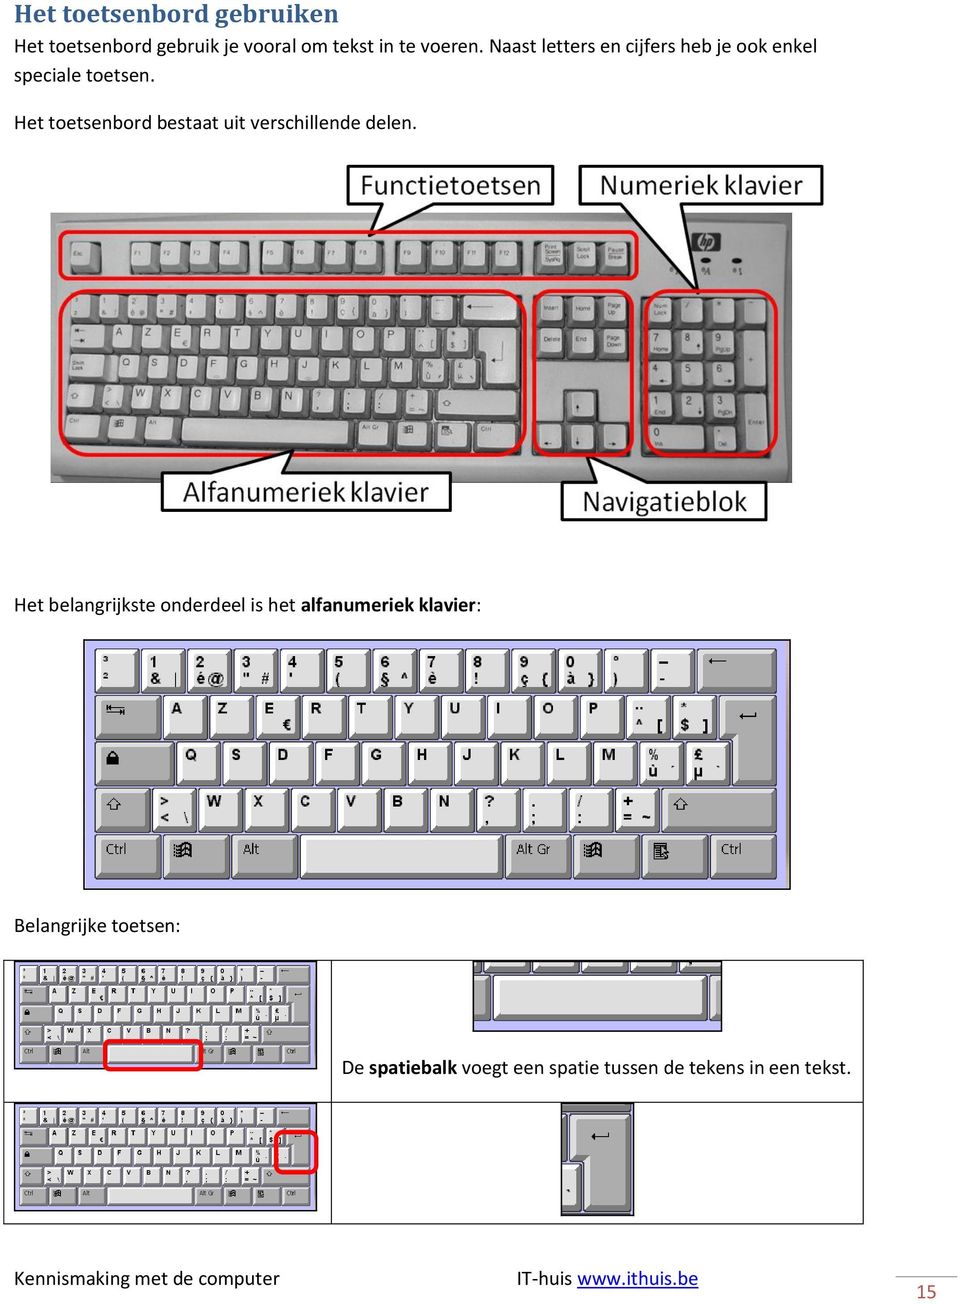 Het toetsenbord bestaat uit verschillende delen.